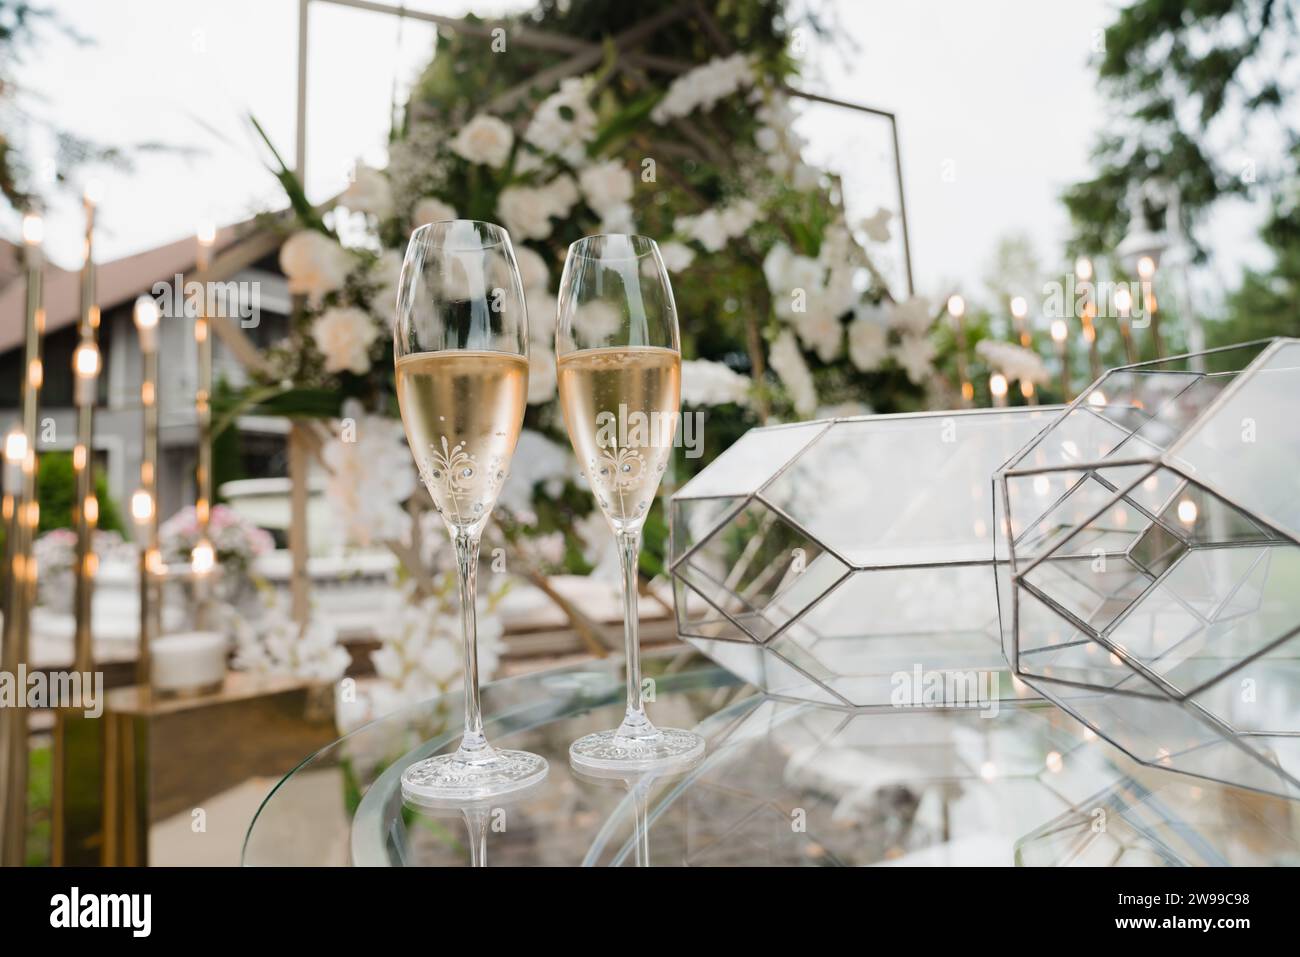 Drei elegante Gläser Rotwein auf einem weiß gekleideten Tisch im Garten, perfekt für eine Hochzeitsfeier Stockfoto